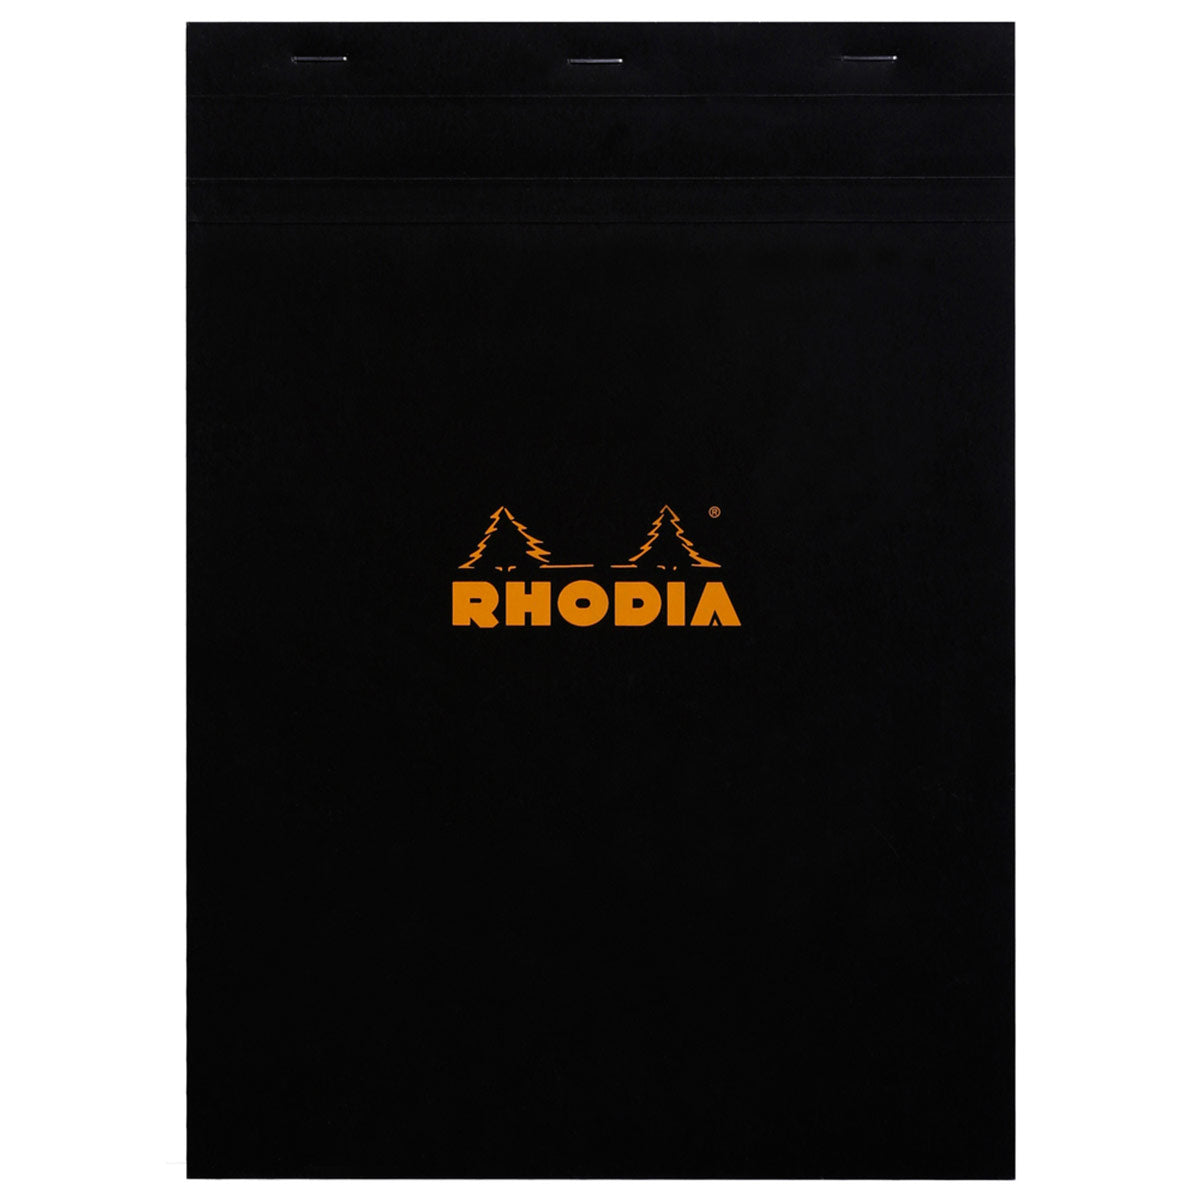 Rhodia - Notizblock A4 No. 18 kariert, schwarz